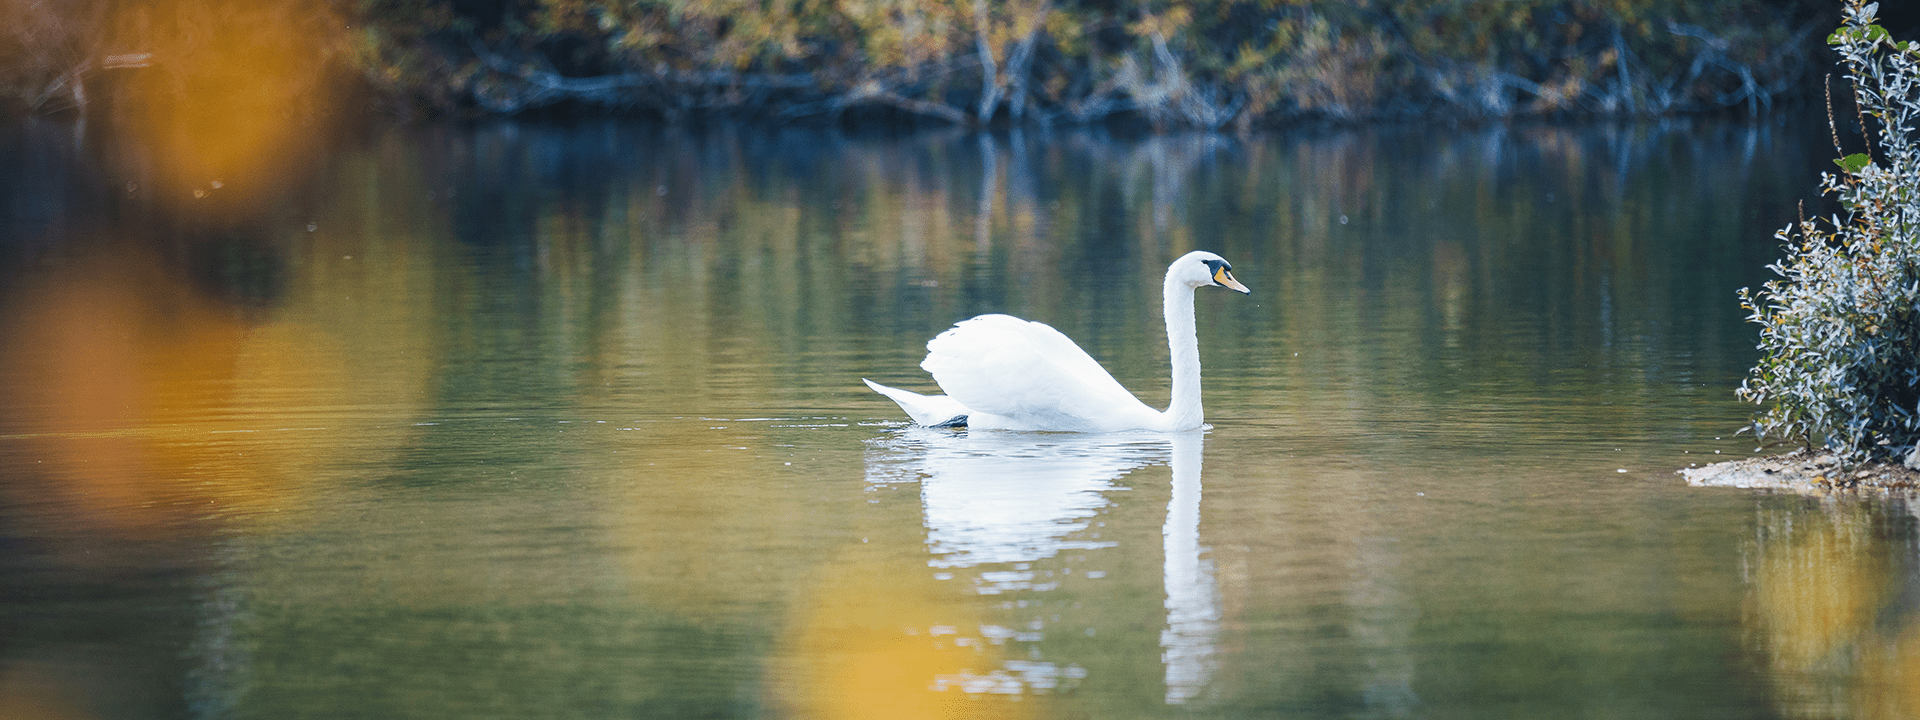 Cygne sur un étang au parc de Livry